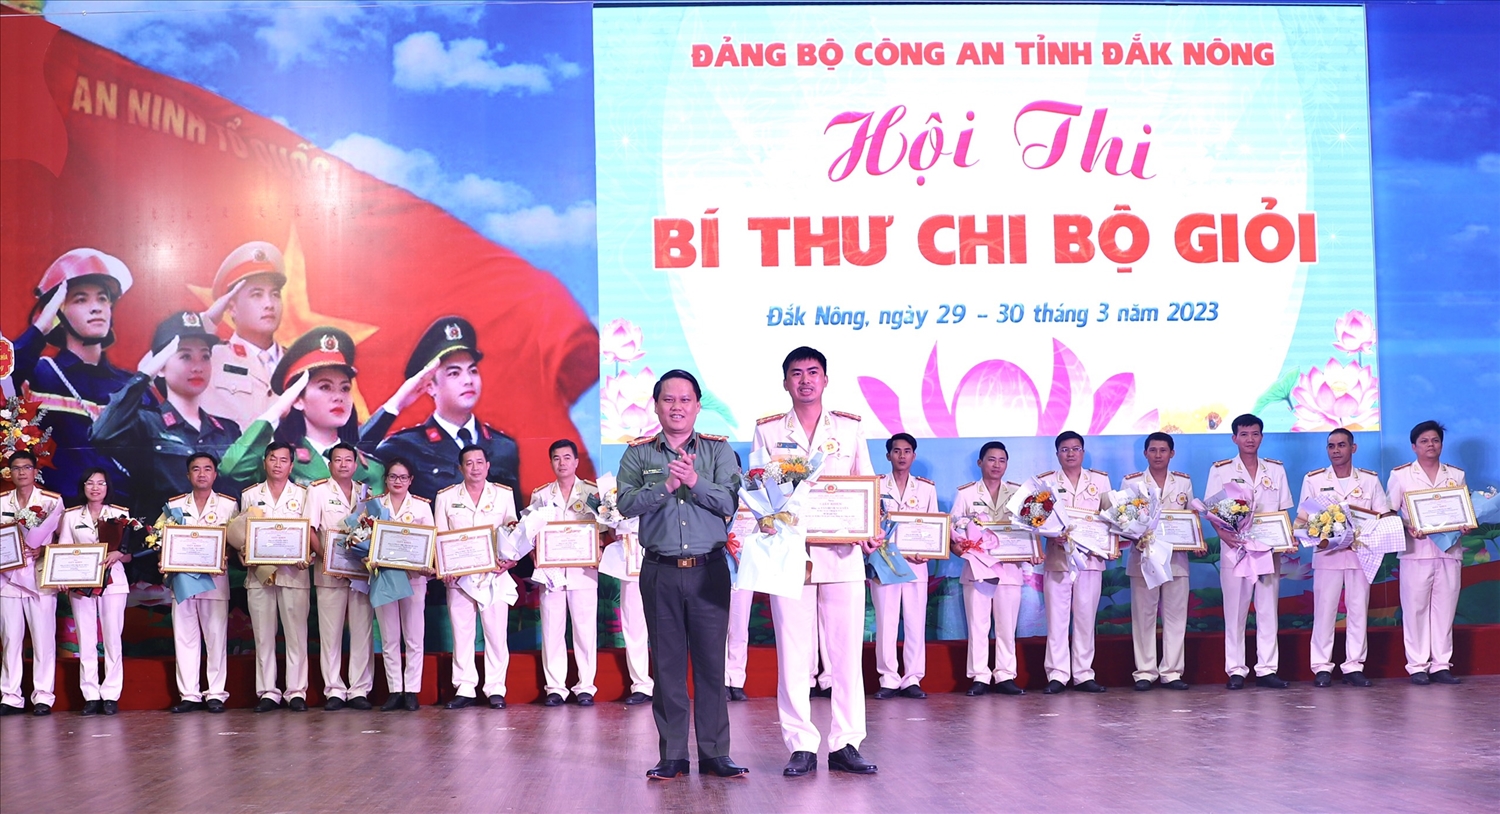 Đại tá Bùi Quang Thanh, Bí thư Đảng ủy, Giám đốc Công an tỉnh trao giải nhất cho thí sinh Tần Đình Nguyên